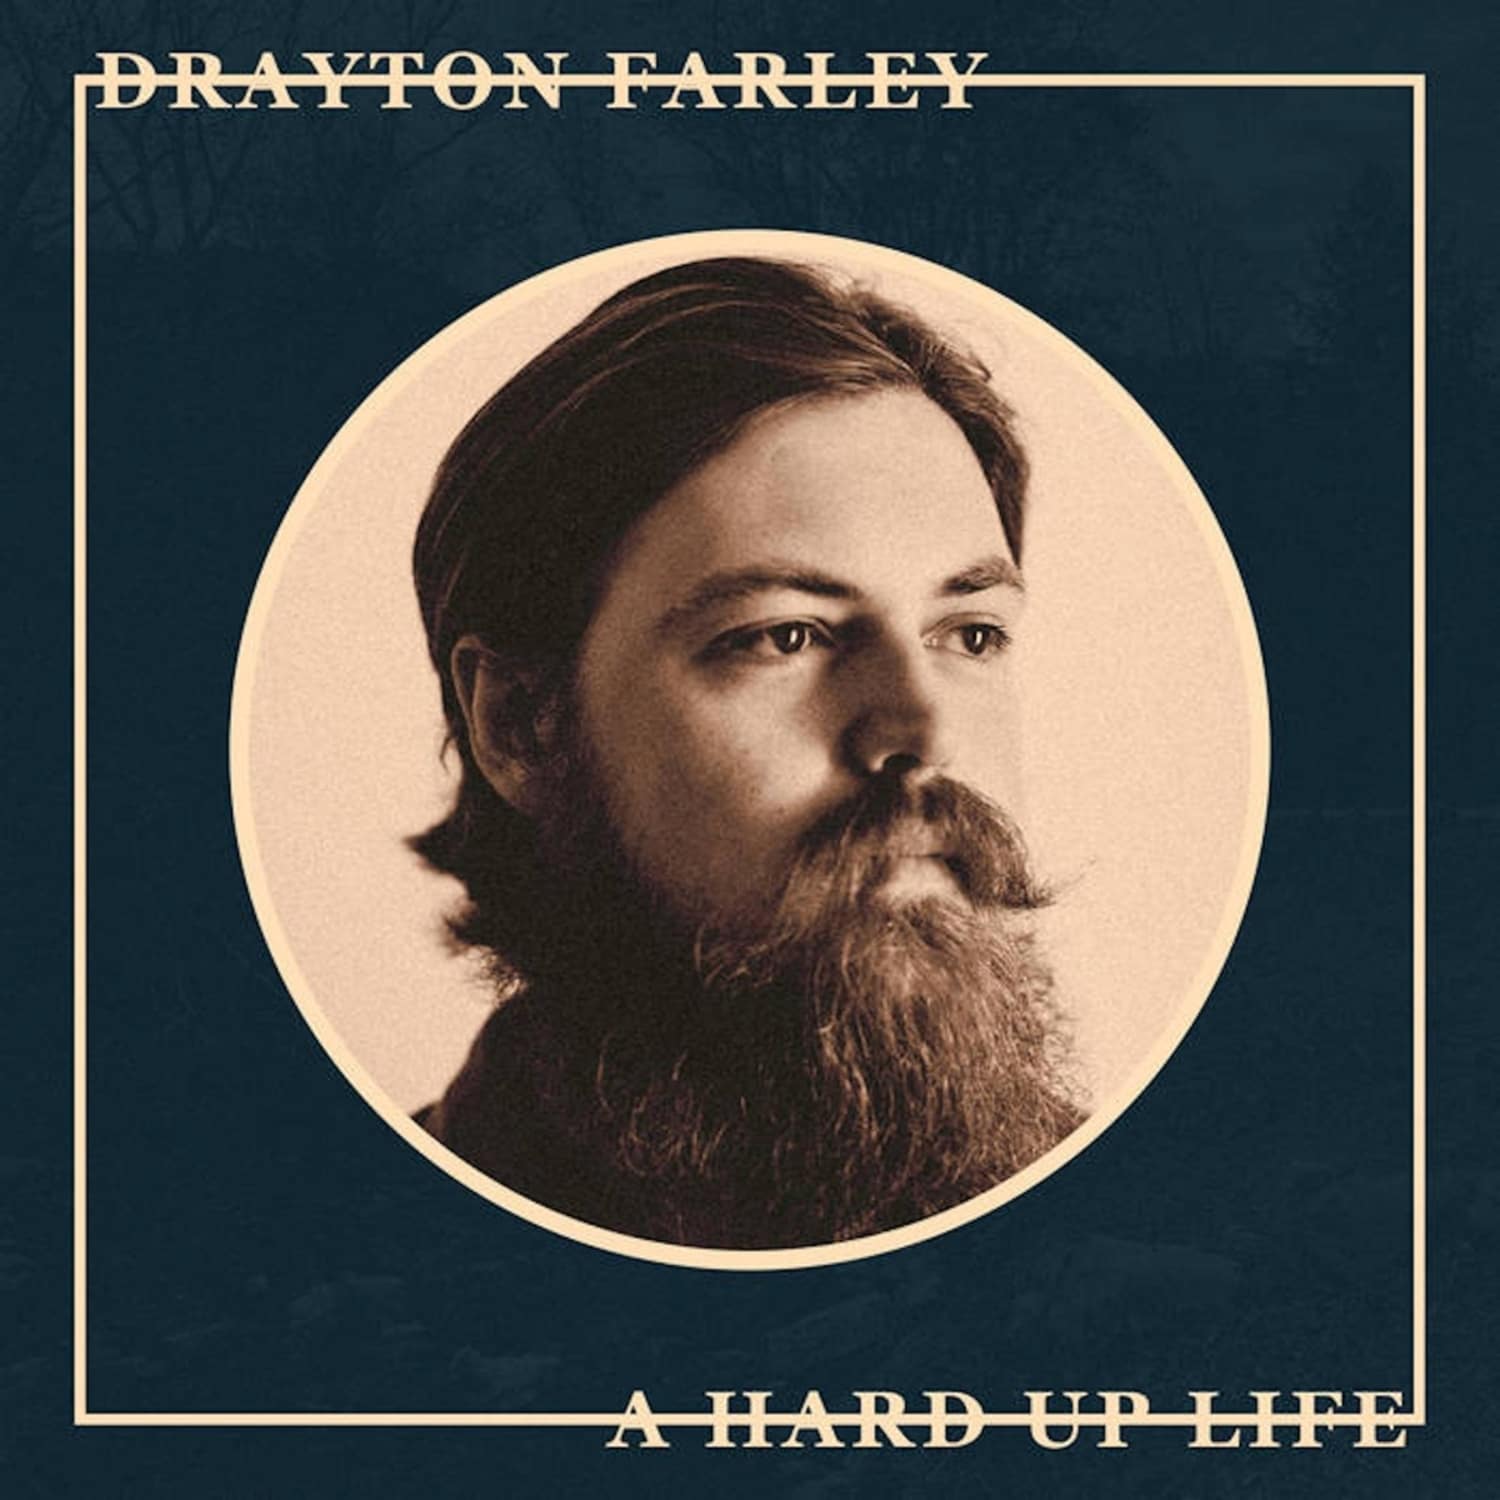  Drayton Farley - A HARD UP LIFE 